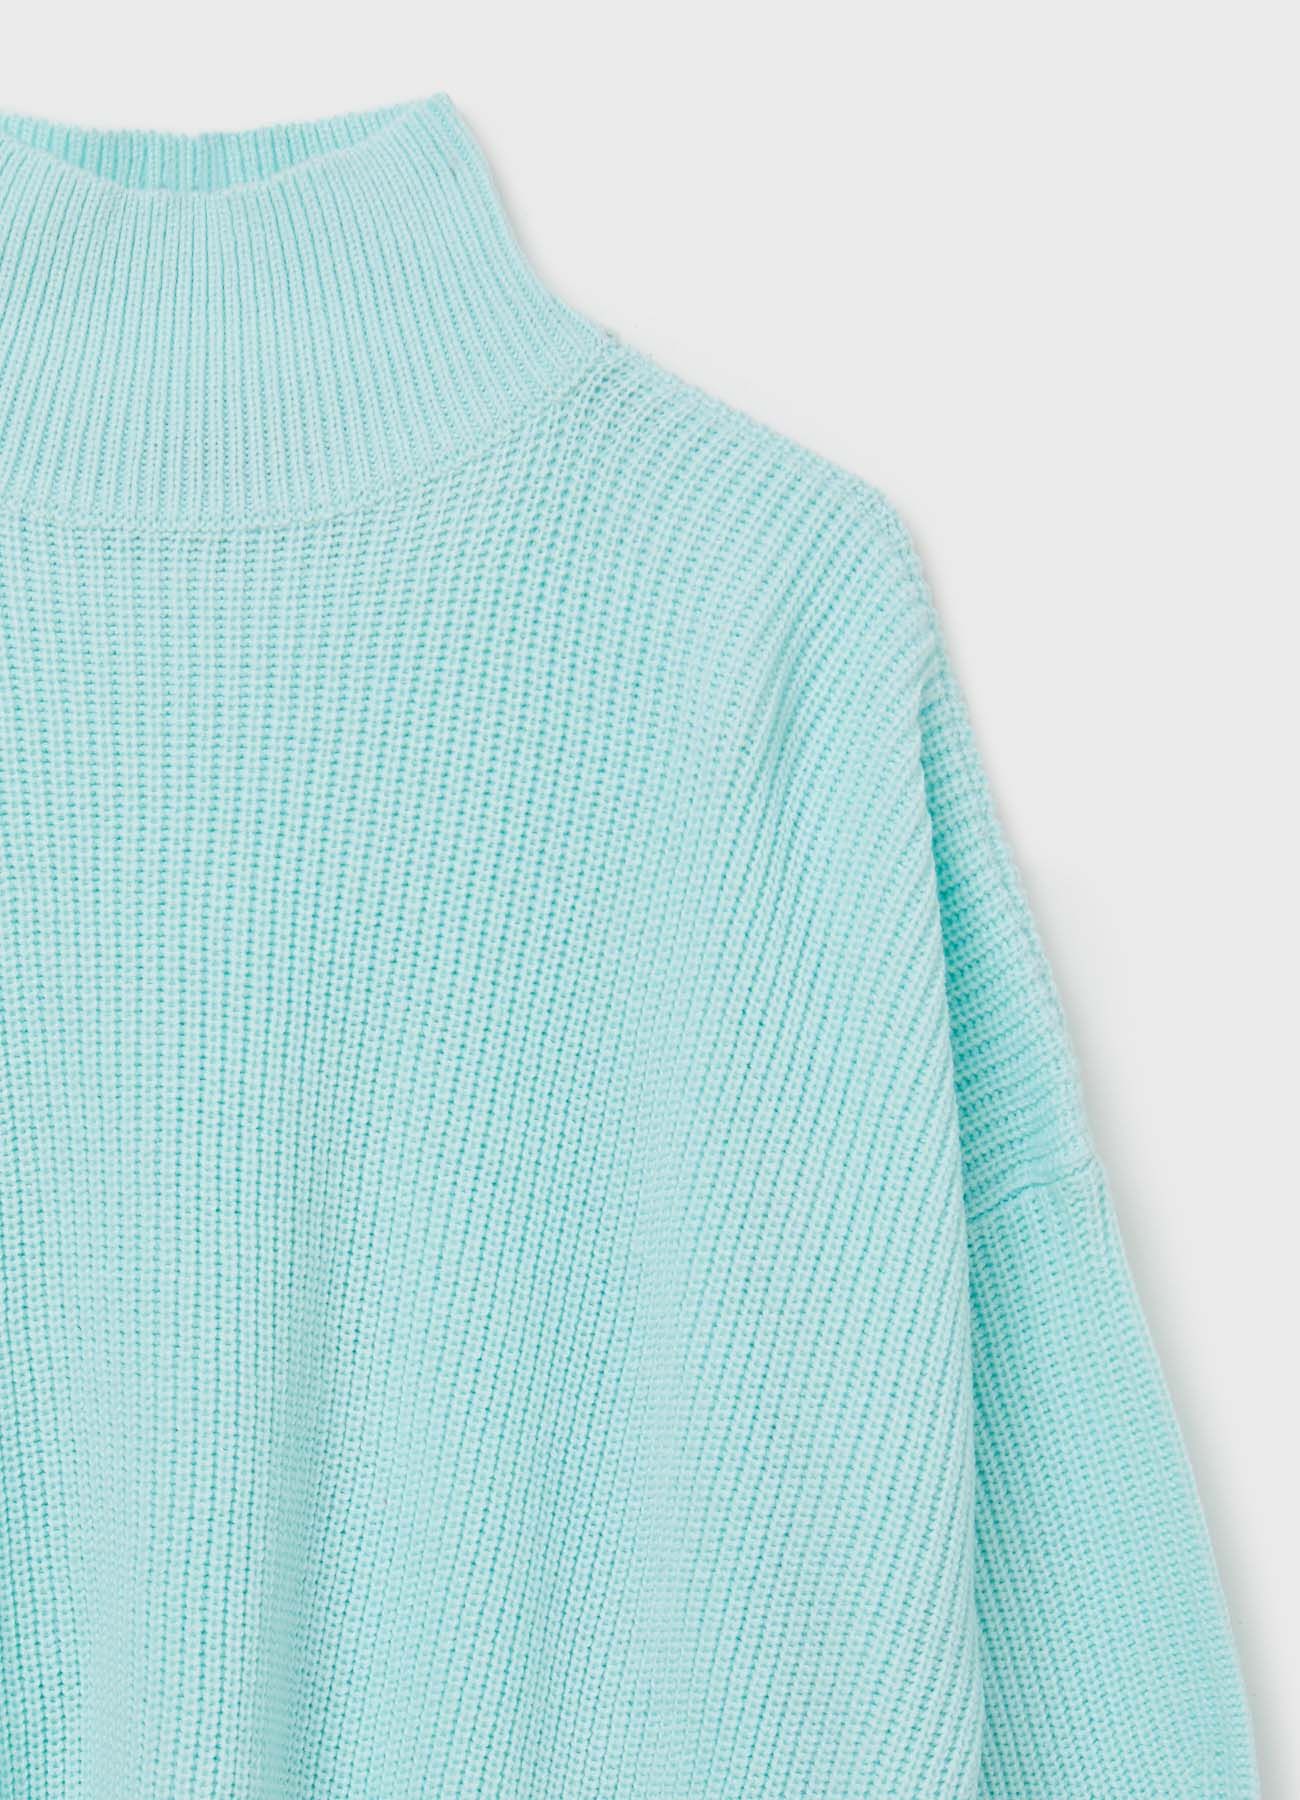 Camicia Oversize Con Maxi Frange Bianco/azzurro